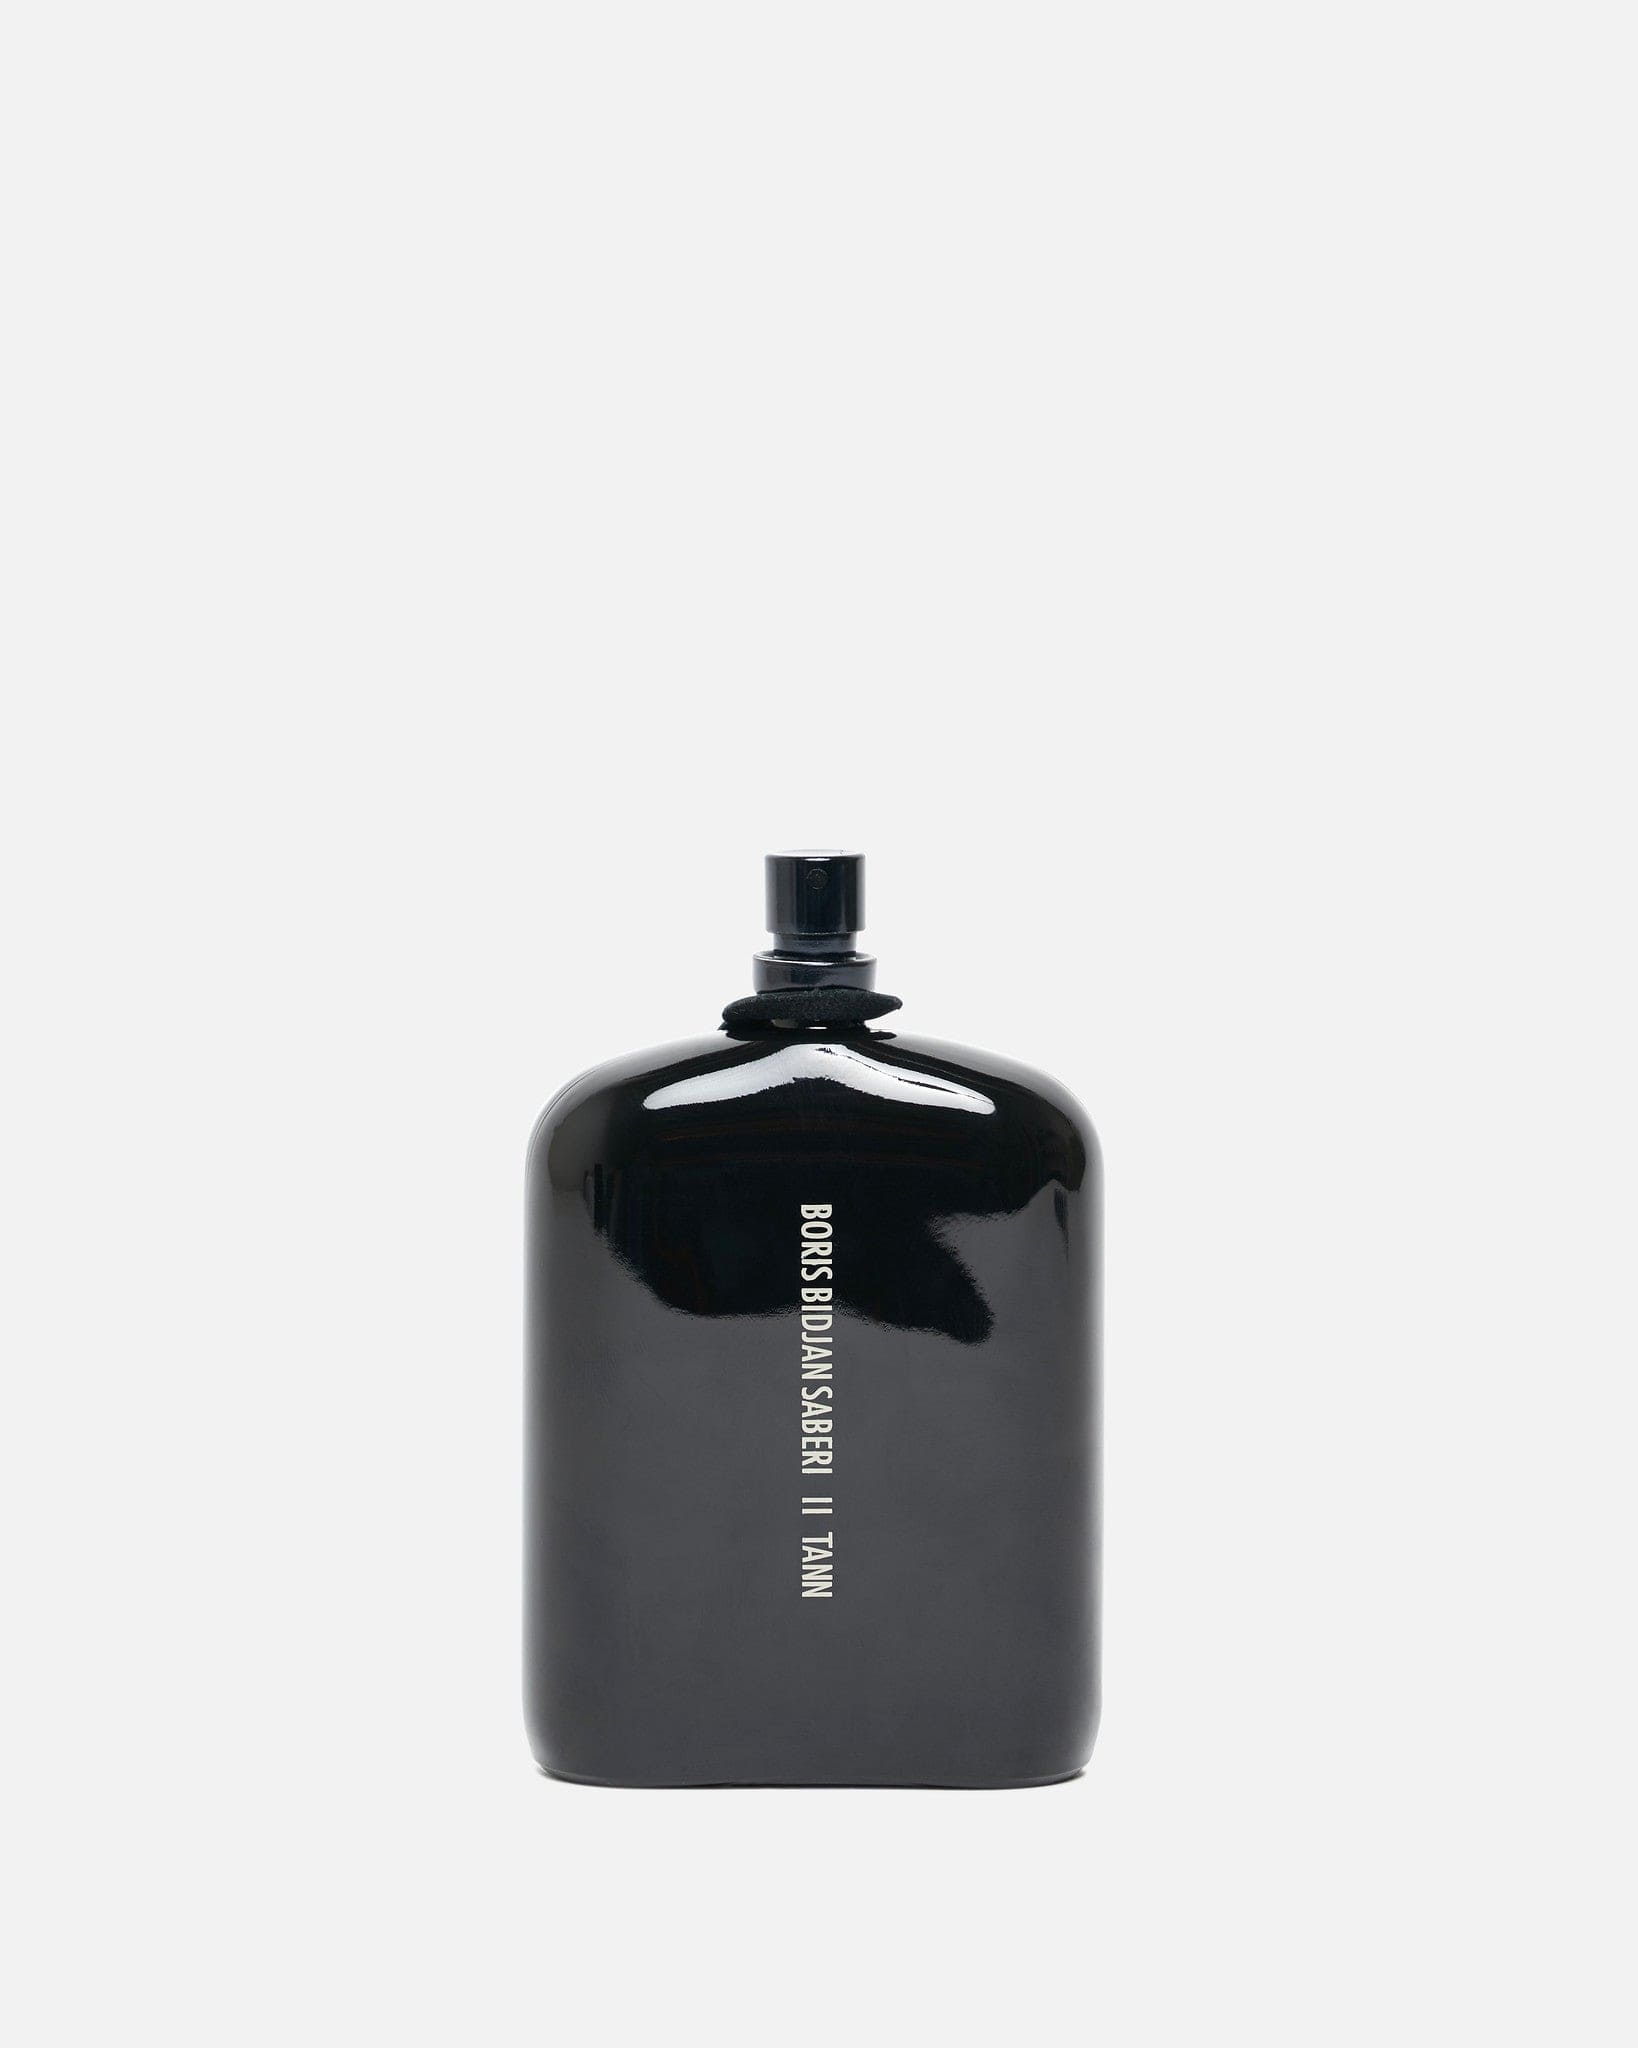 Tann Fragrance in 100ml – SVRN